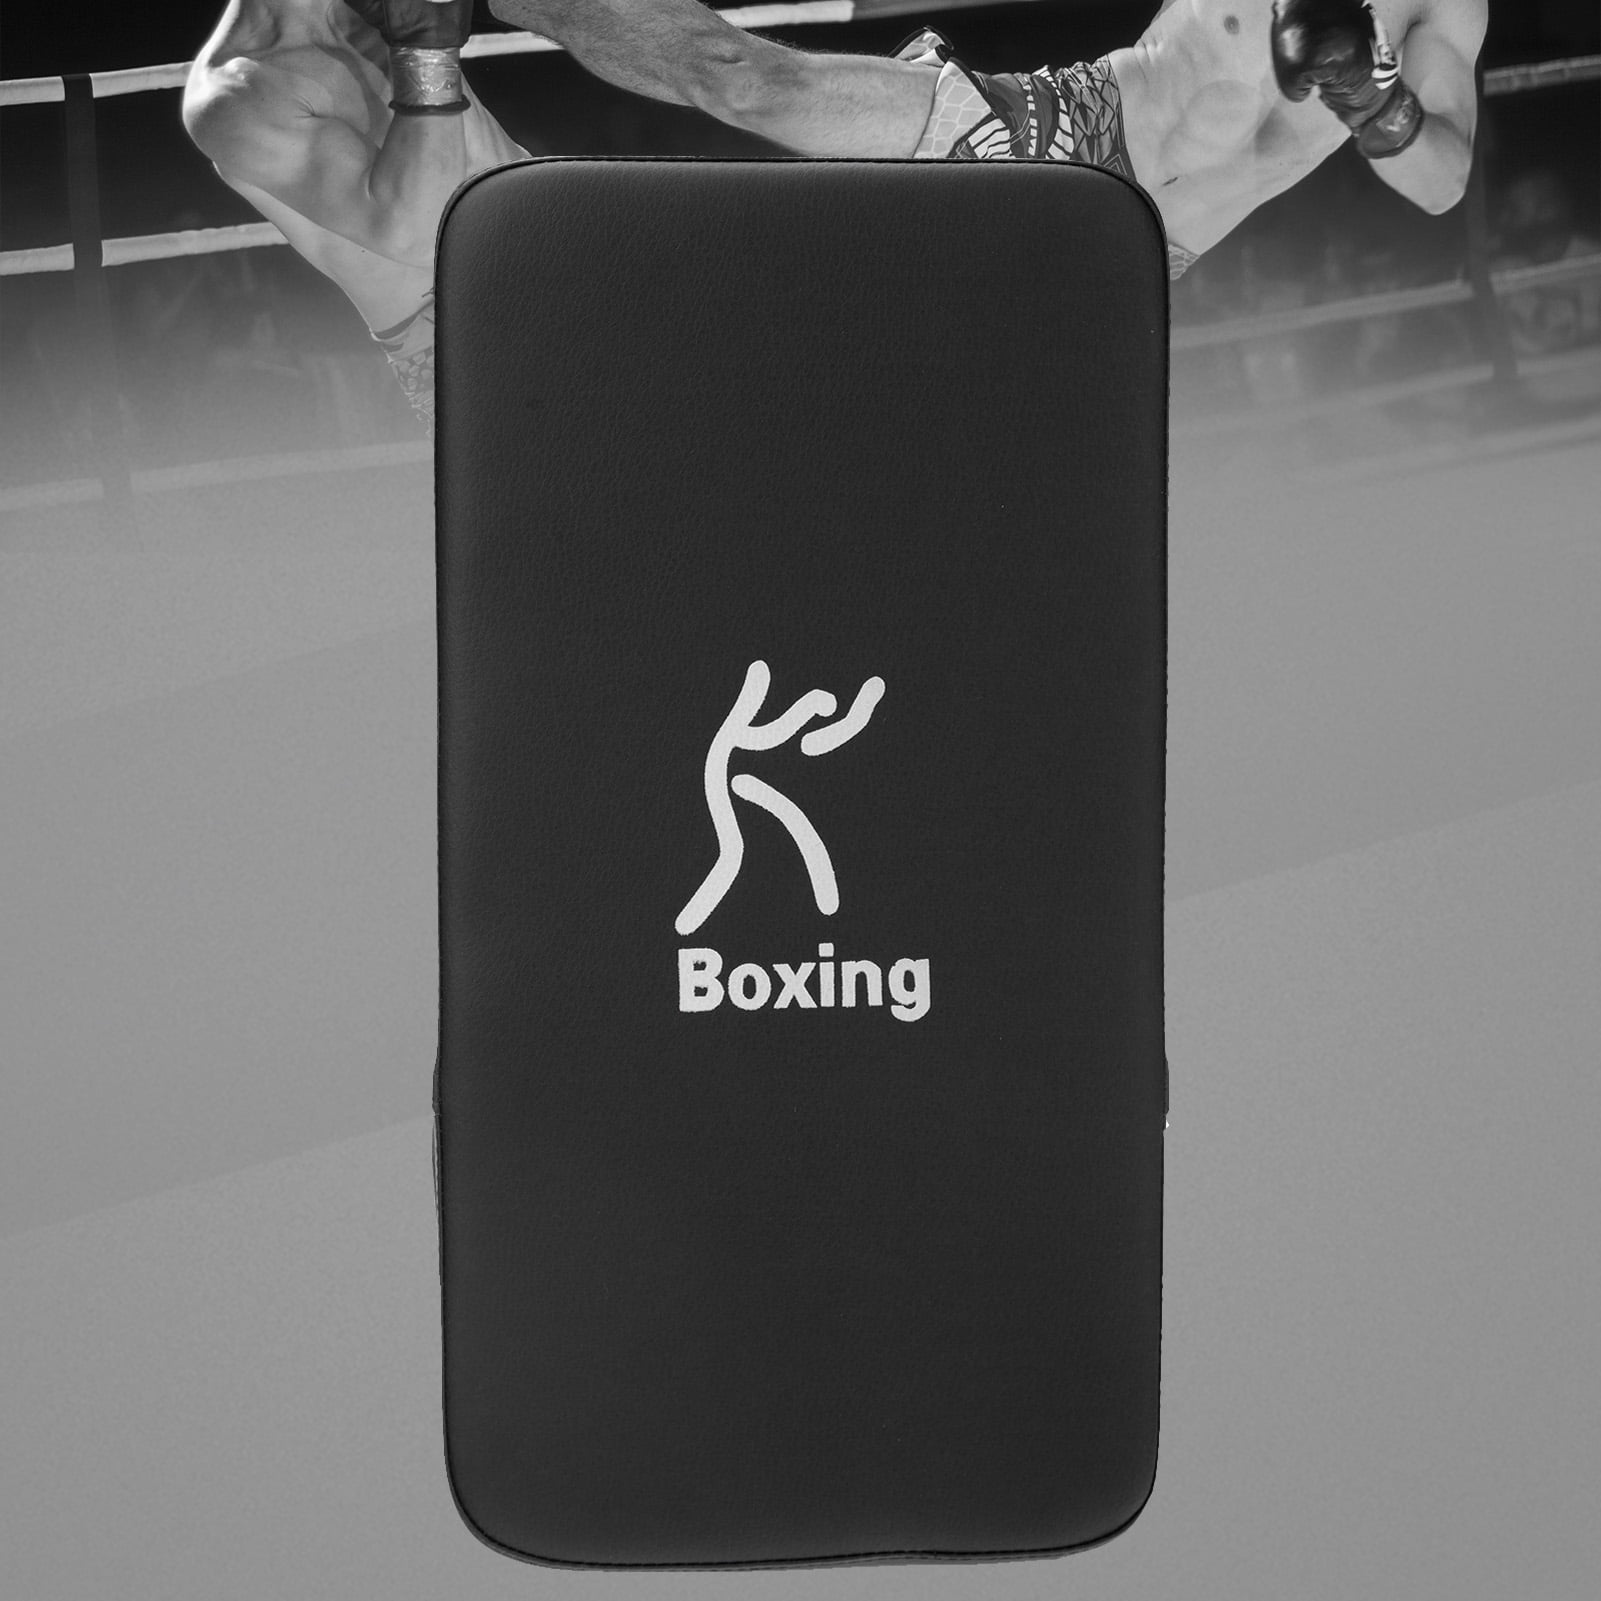 Taekwondo Kick Boxing Pad PU Leather MMA Muay Thai Kickboxing Punching Shield 